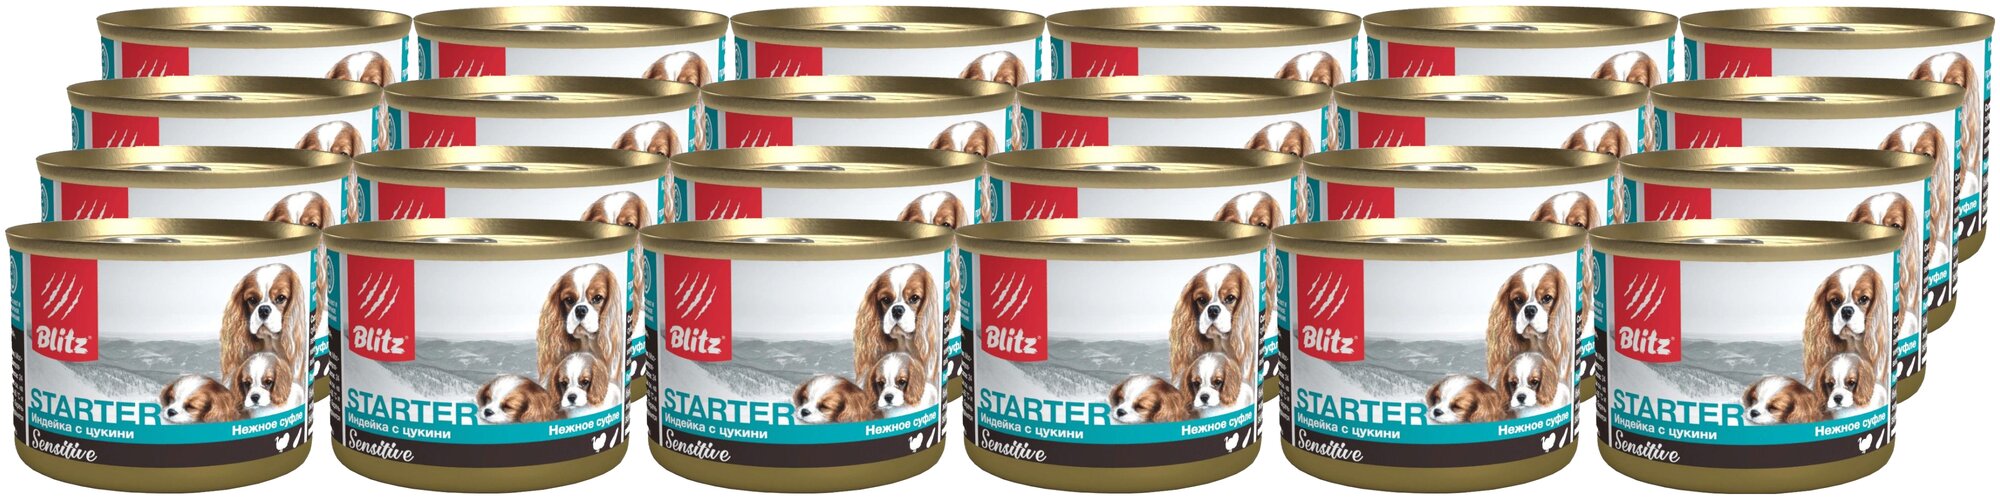 BLITZ SENSITIVE STARTER для щенков, беременных и кормящих сук суфле с индейкой и цукини (200 гр х 24 шт)